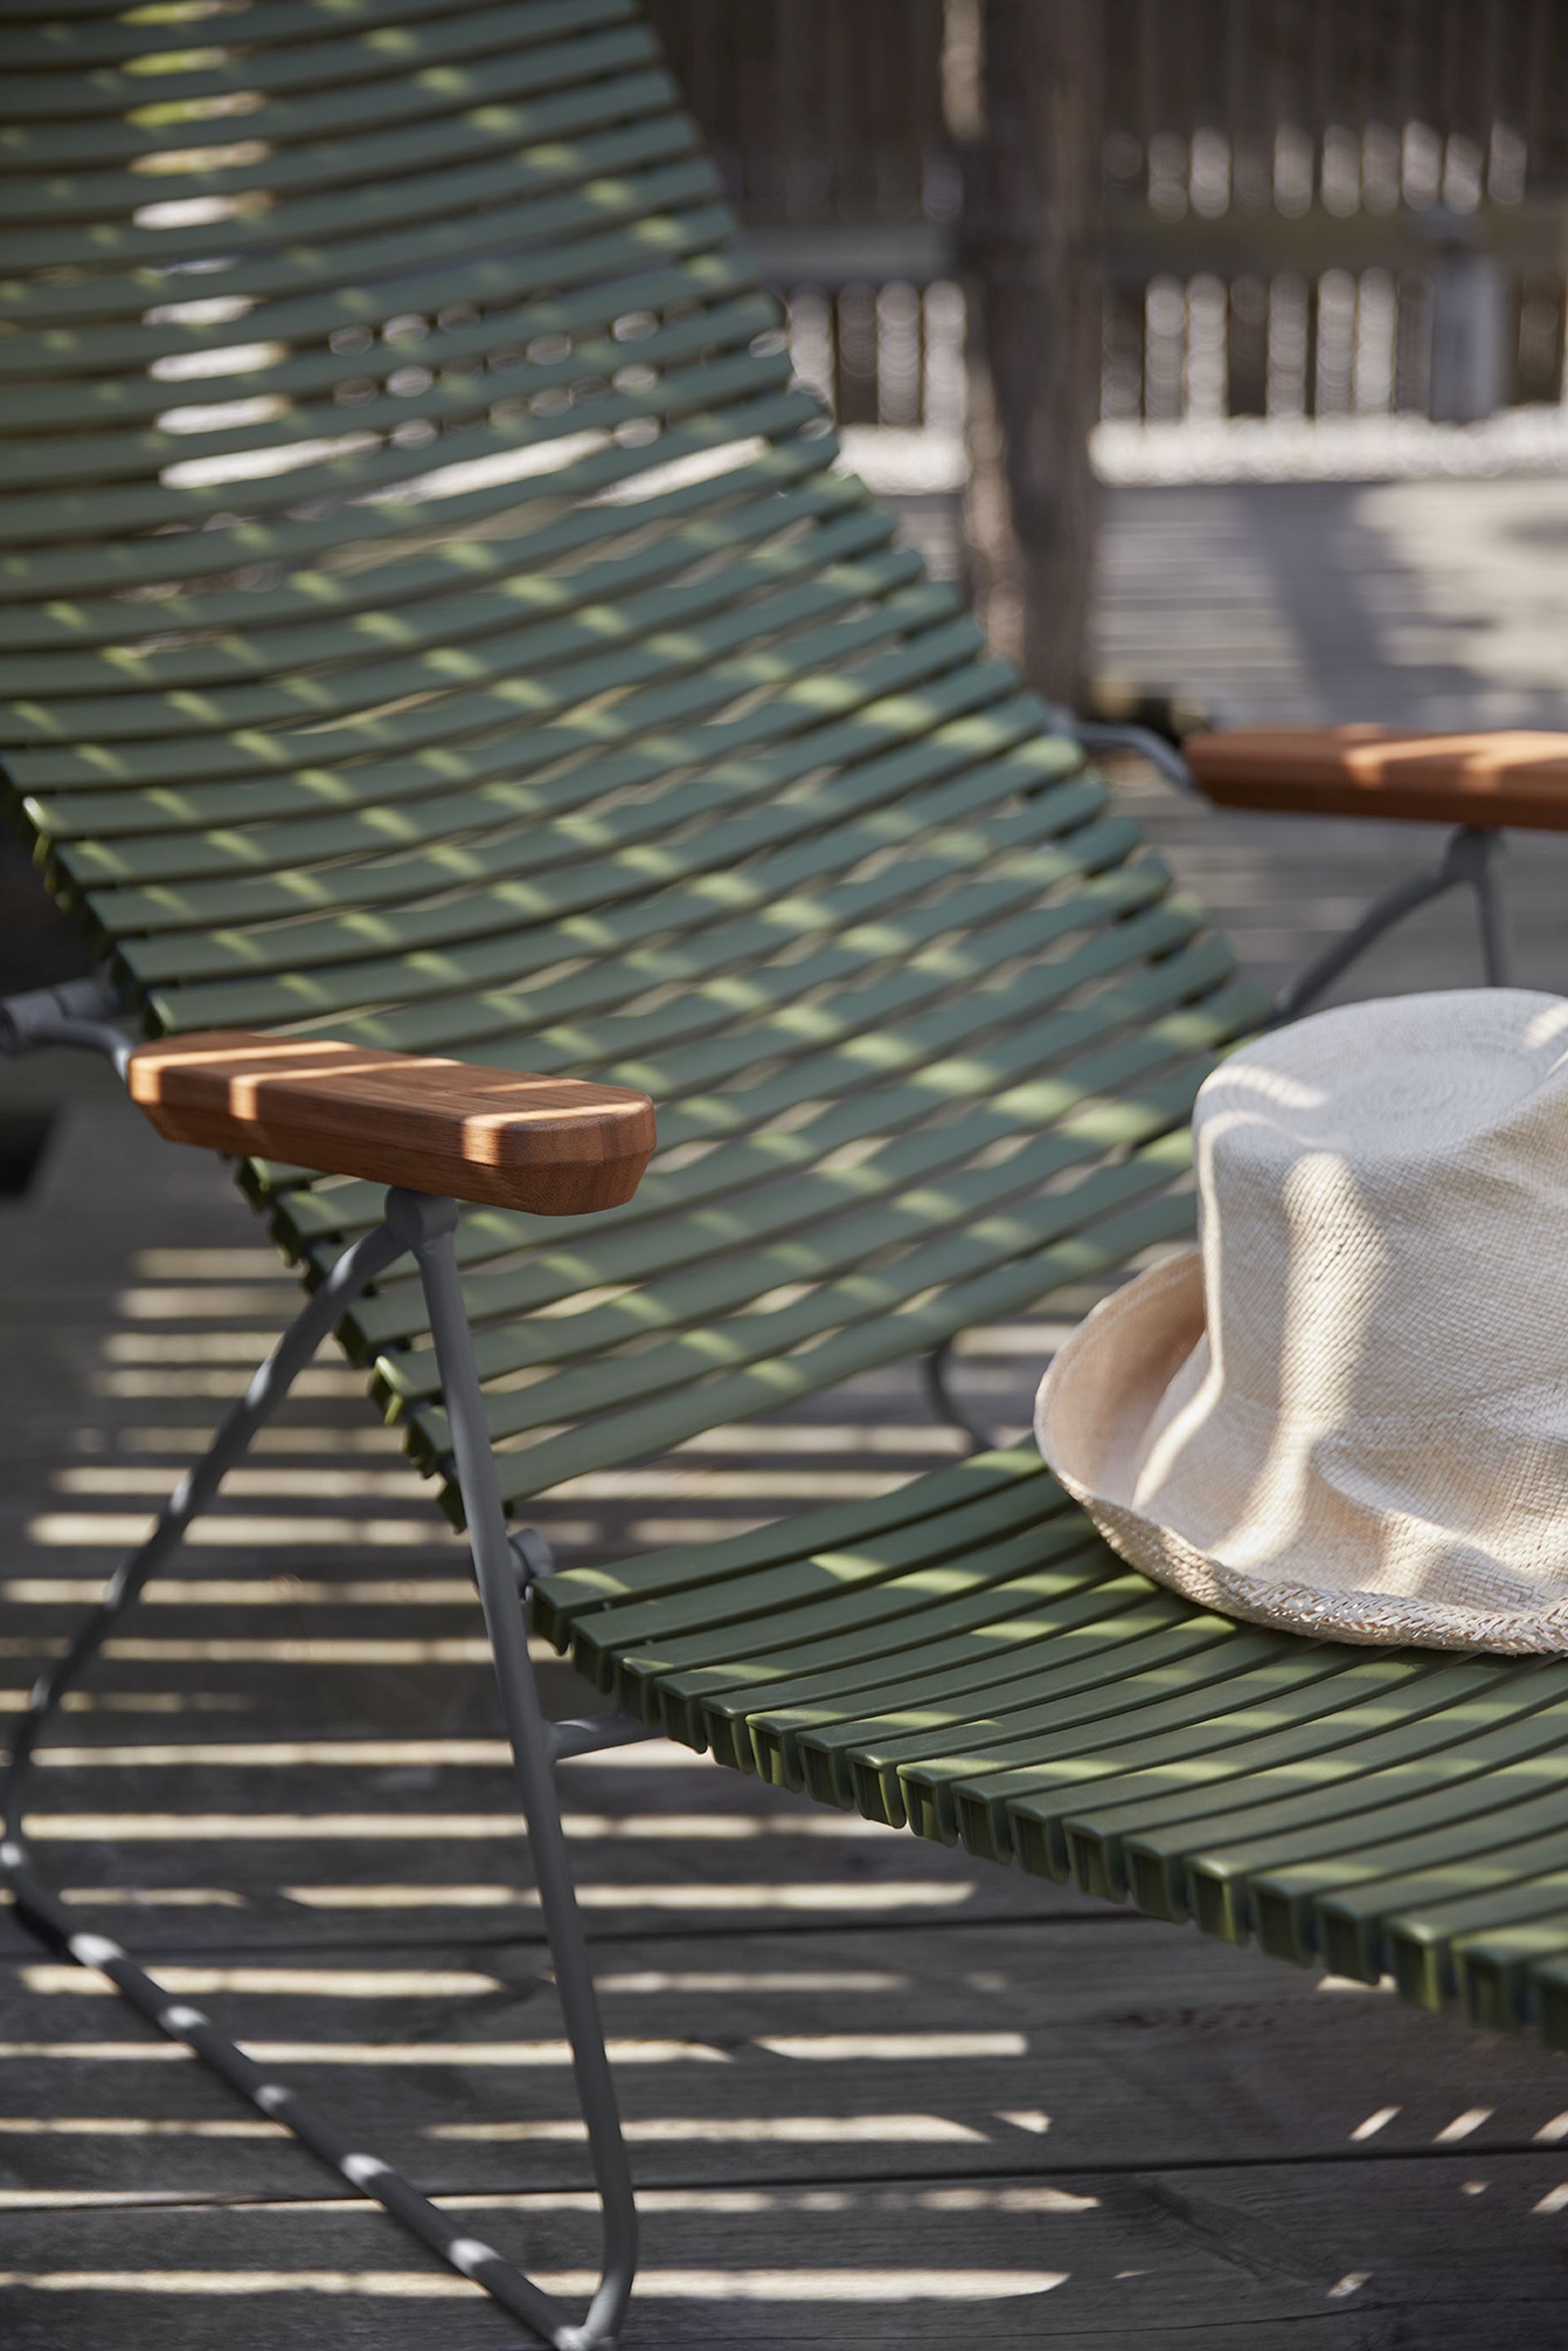 Detailaufnahme des Houe Click Sunlounger Liegestuhl auf einer sonnigen Terrasse mit Hut.